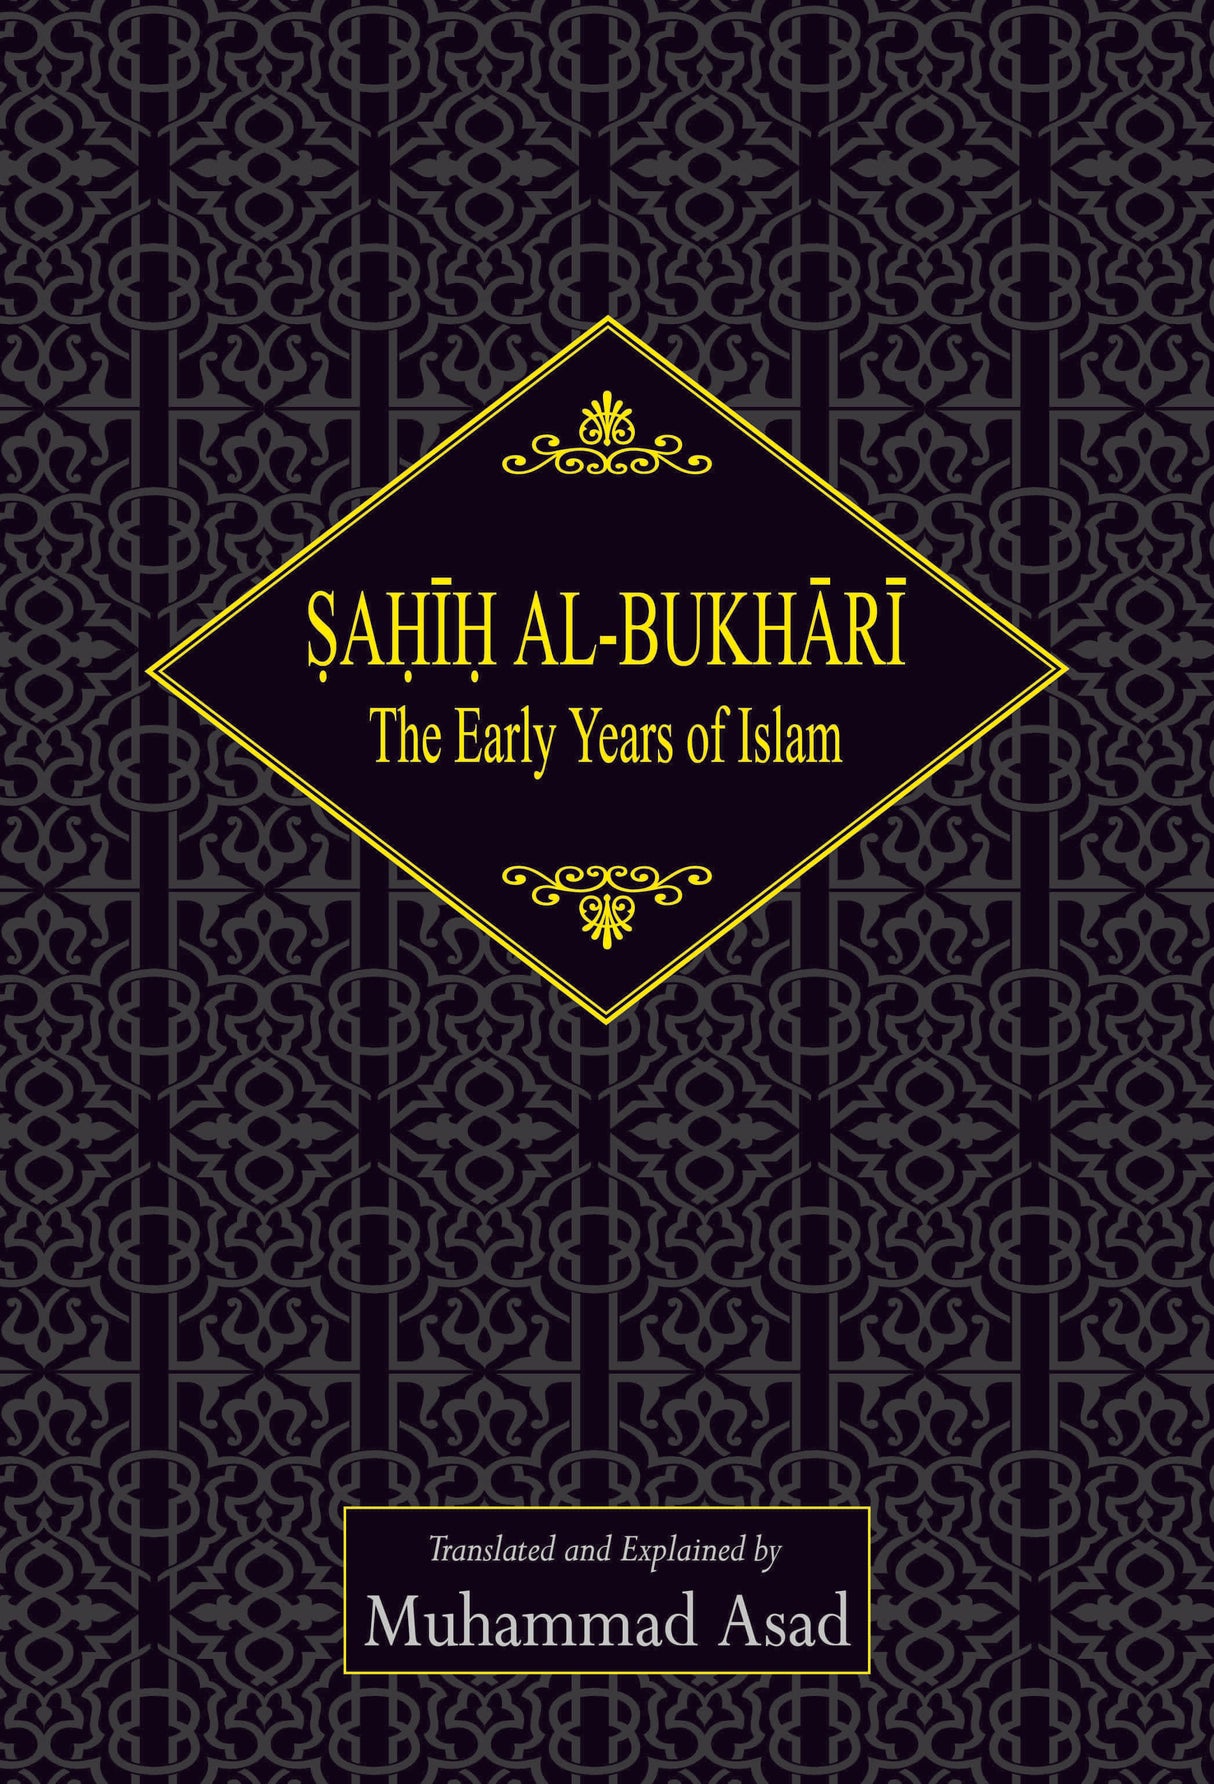 Sahih al-Bukhari: The Early Years of Islam